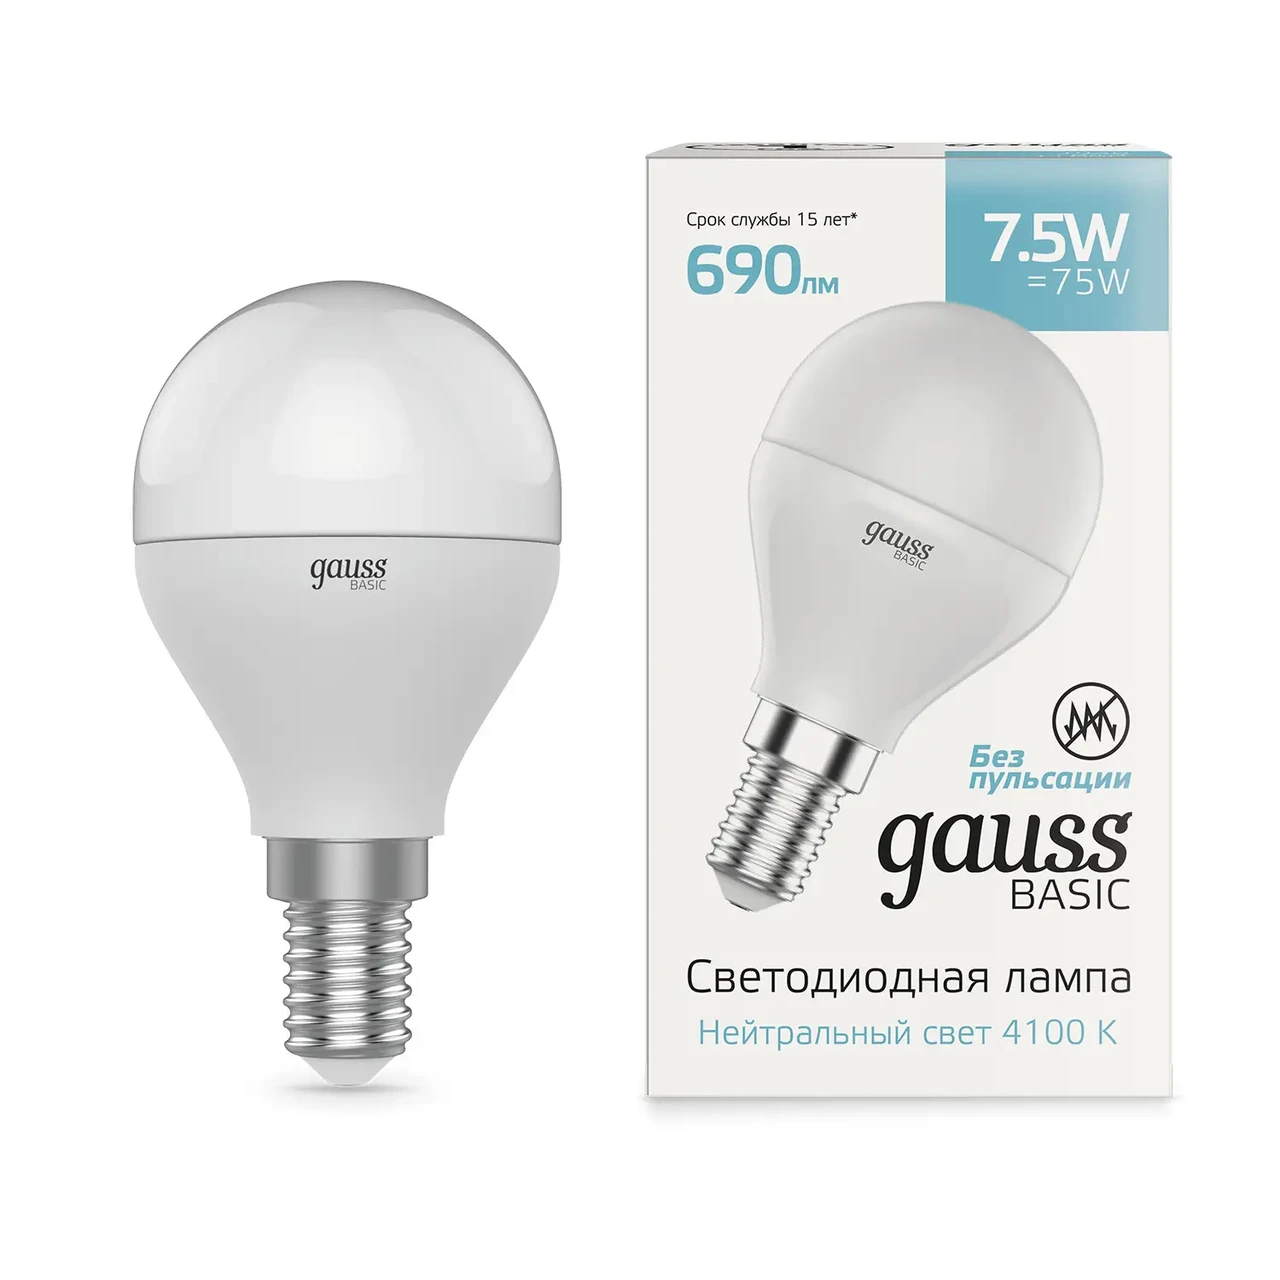 Лампа Gauss Basic Шар 7,5W 690lm 4100K E14 LED 1/10/100, фото 1